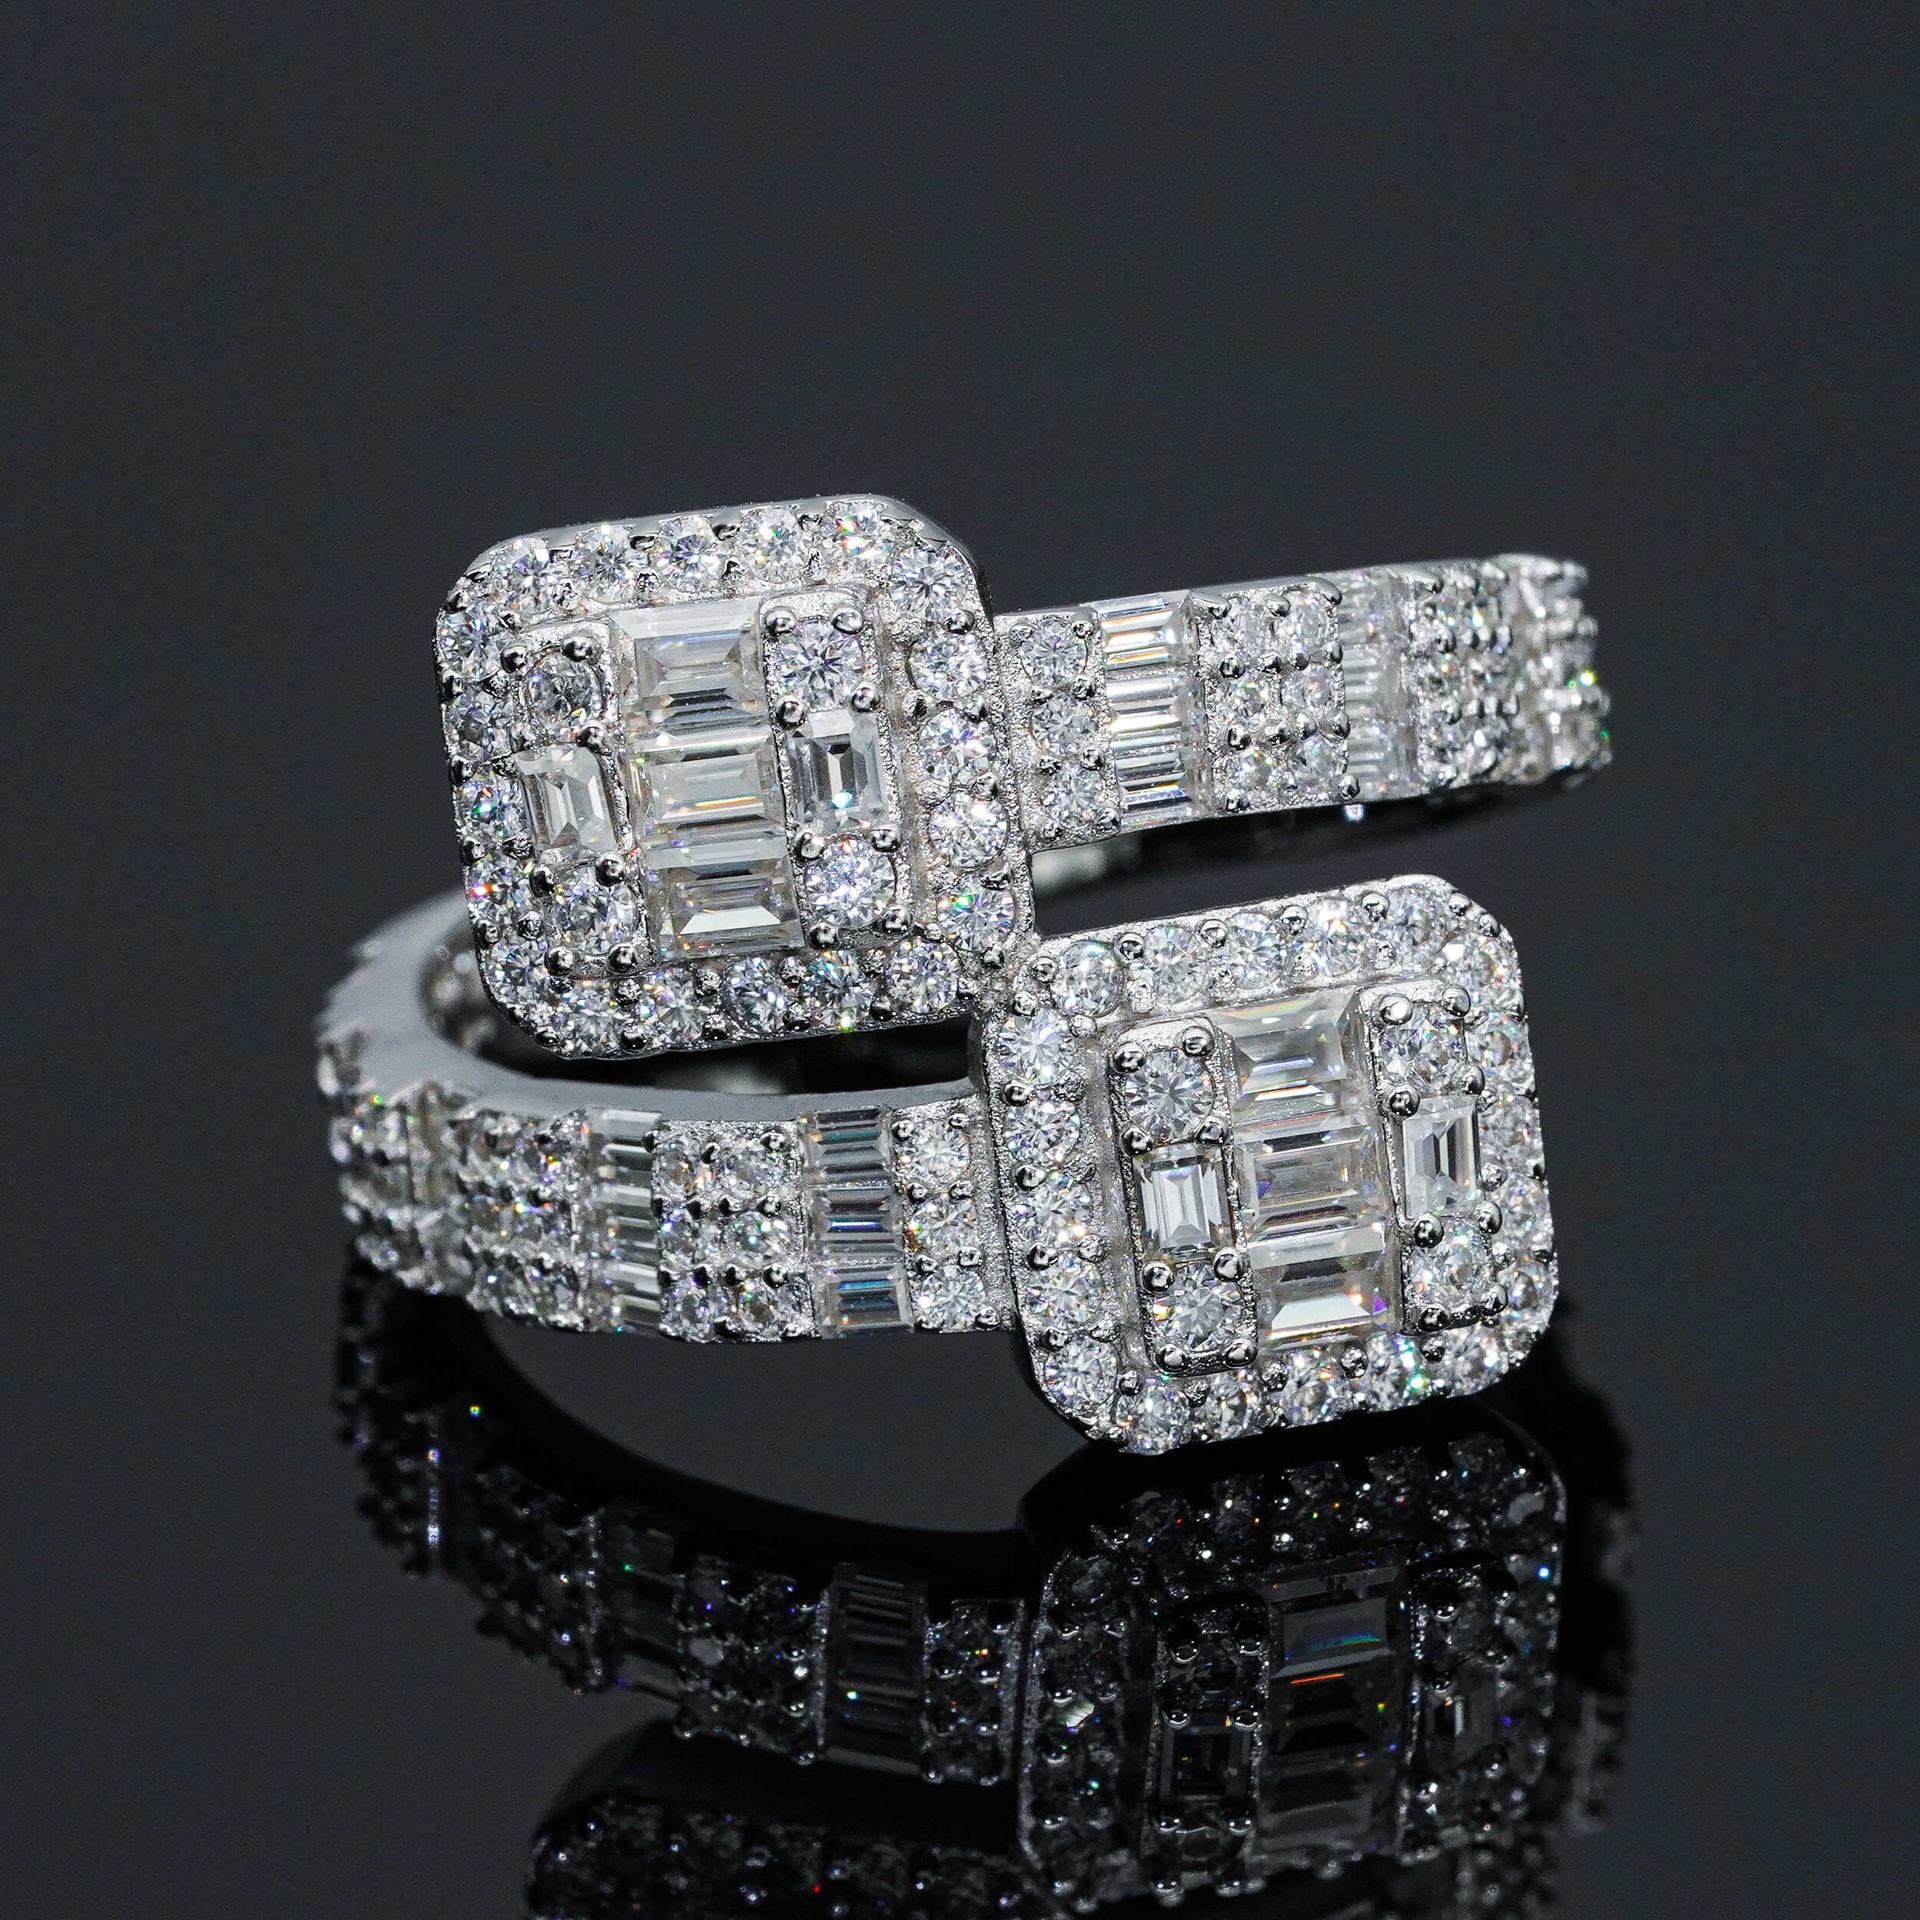 Homens homens de moda de moda anéis de moissanite passou o teste de diamante 925 anel de diamante de prata esterlina para festas casamento bom presente tamanho 7-10